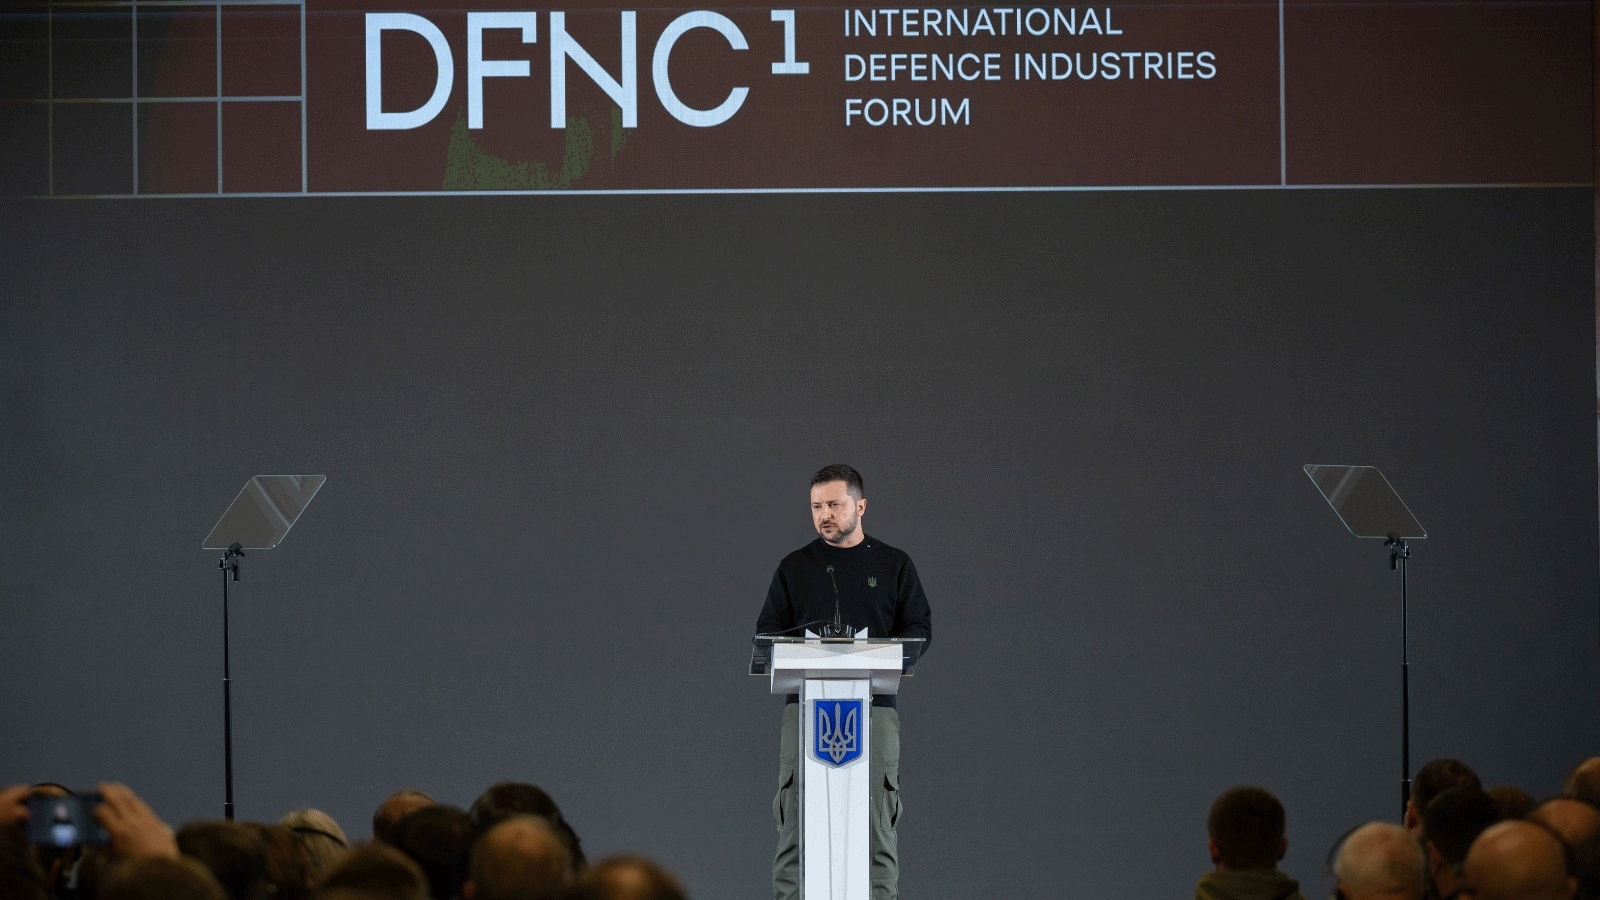 زيلينسكي يتحدث خلال منتدى الصناعات الدفاعية الأول في أوكرانيا حيث جمع 252 شركة دفاعية رائدة من أكثر من 30 دولة في أوروبا وأمريكا الشمالية وآسيا وأستراليا.